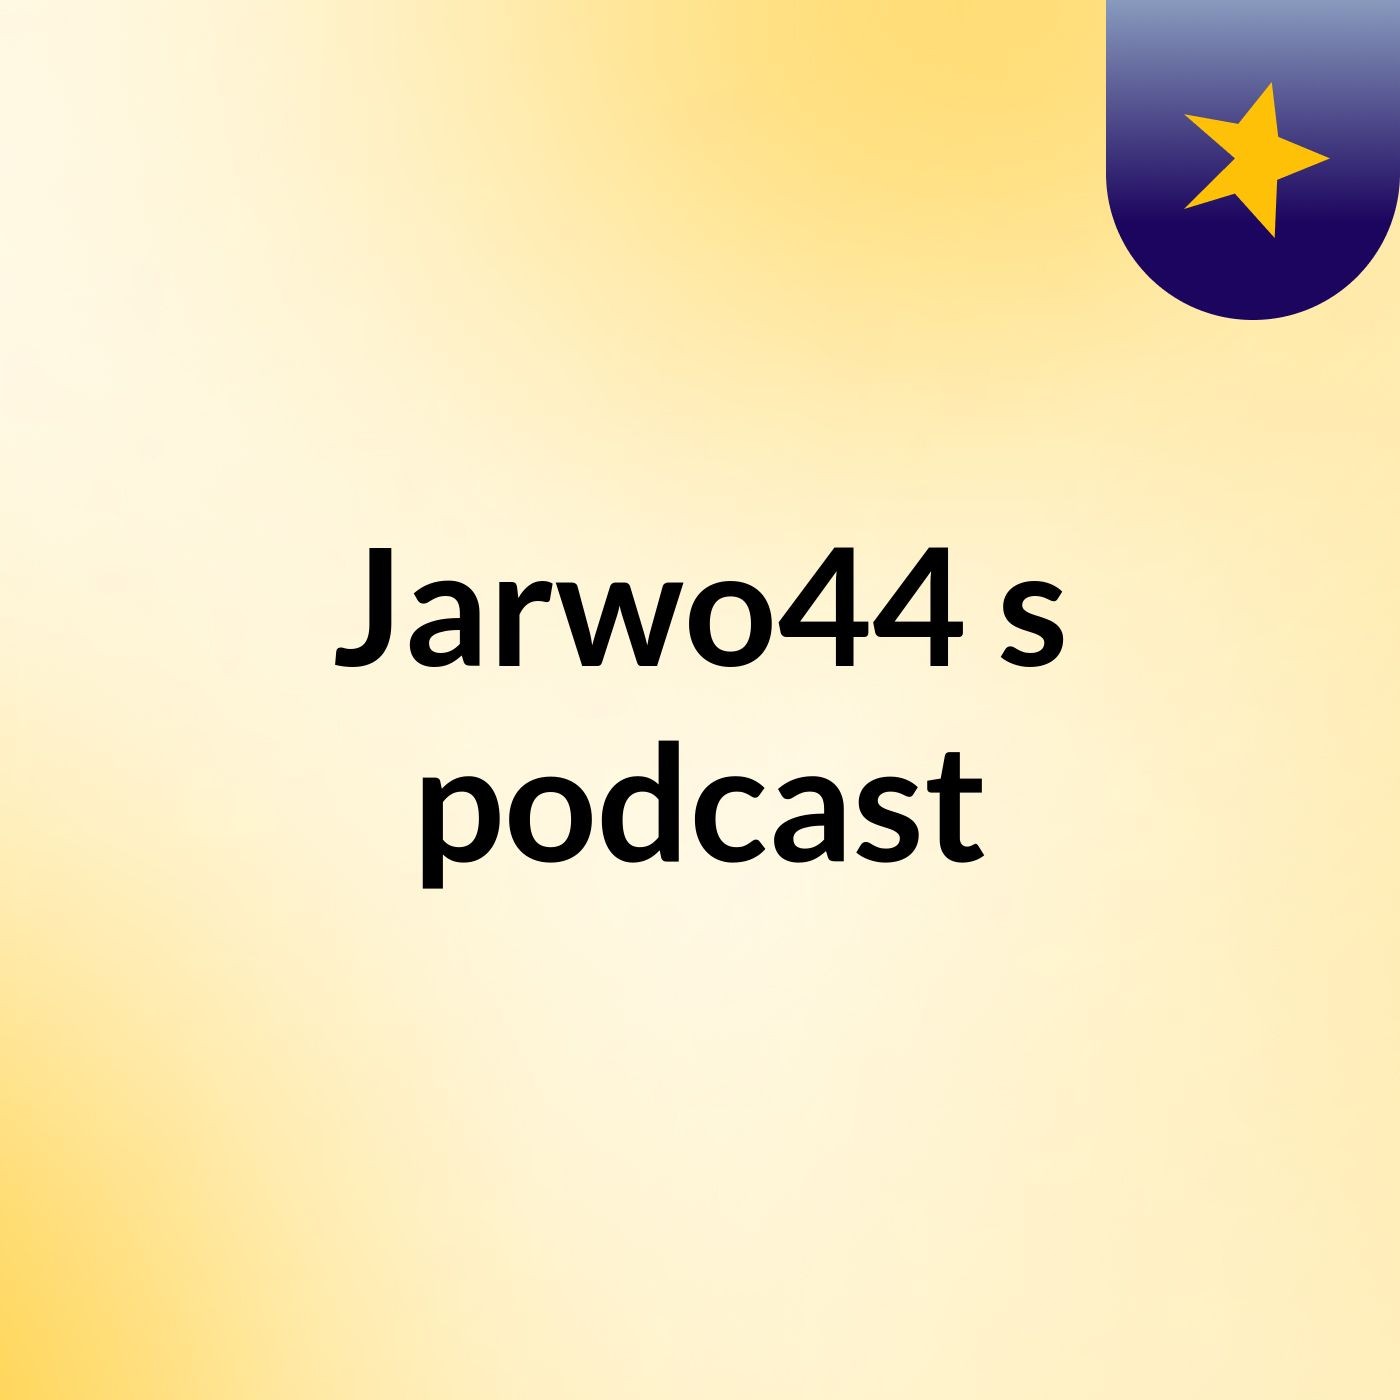 Episode 6 - Jarwo44's podcast